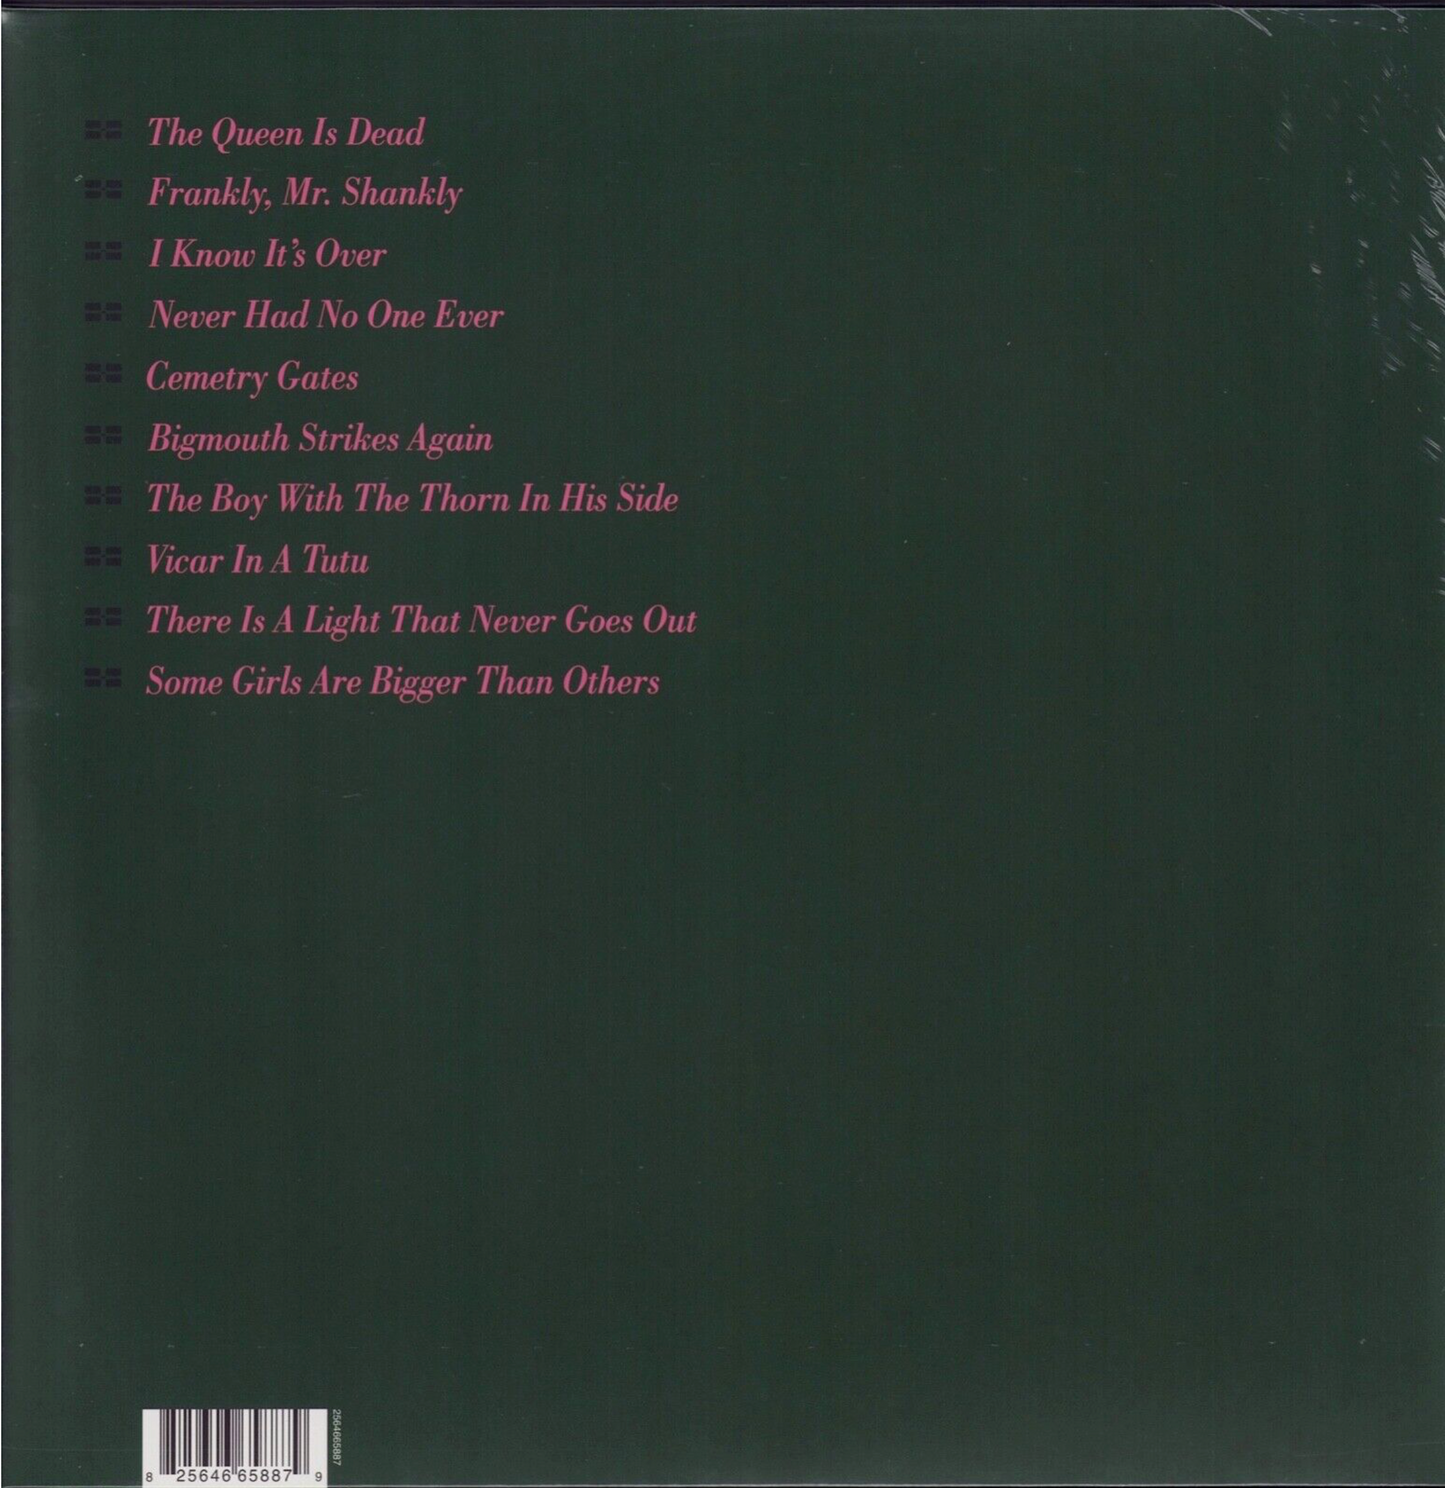 The Smiths ‎- The Queen Is Dead Vinyl LP